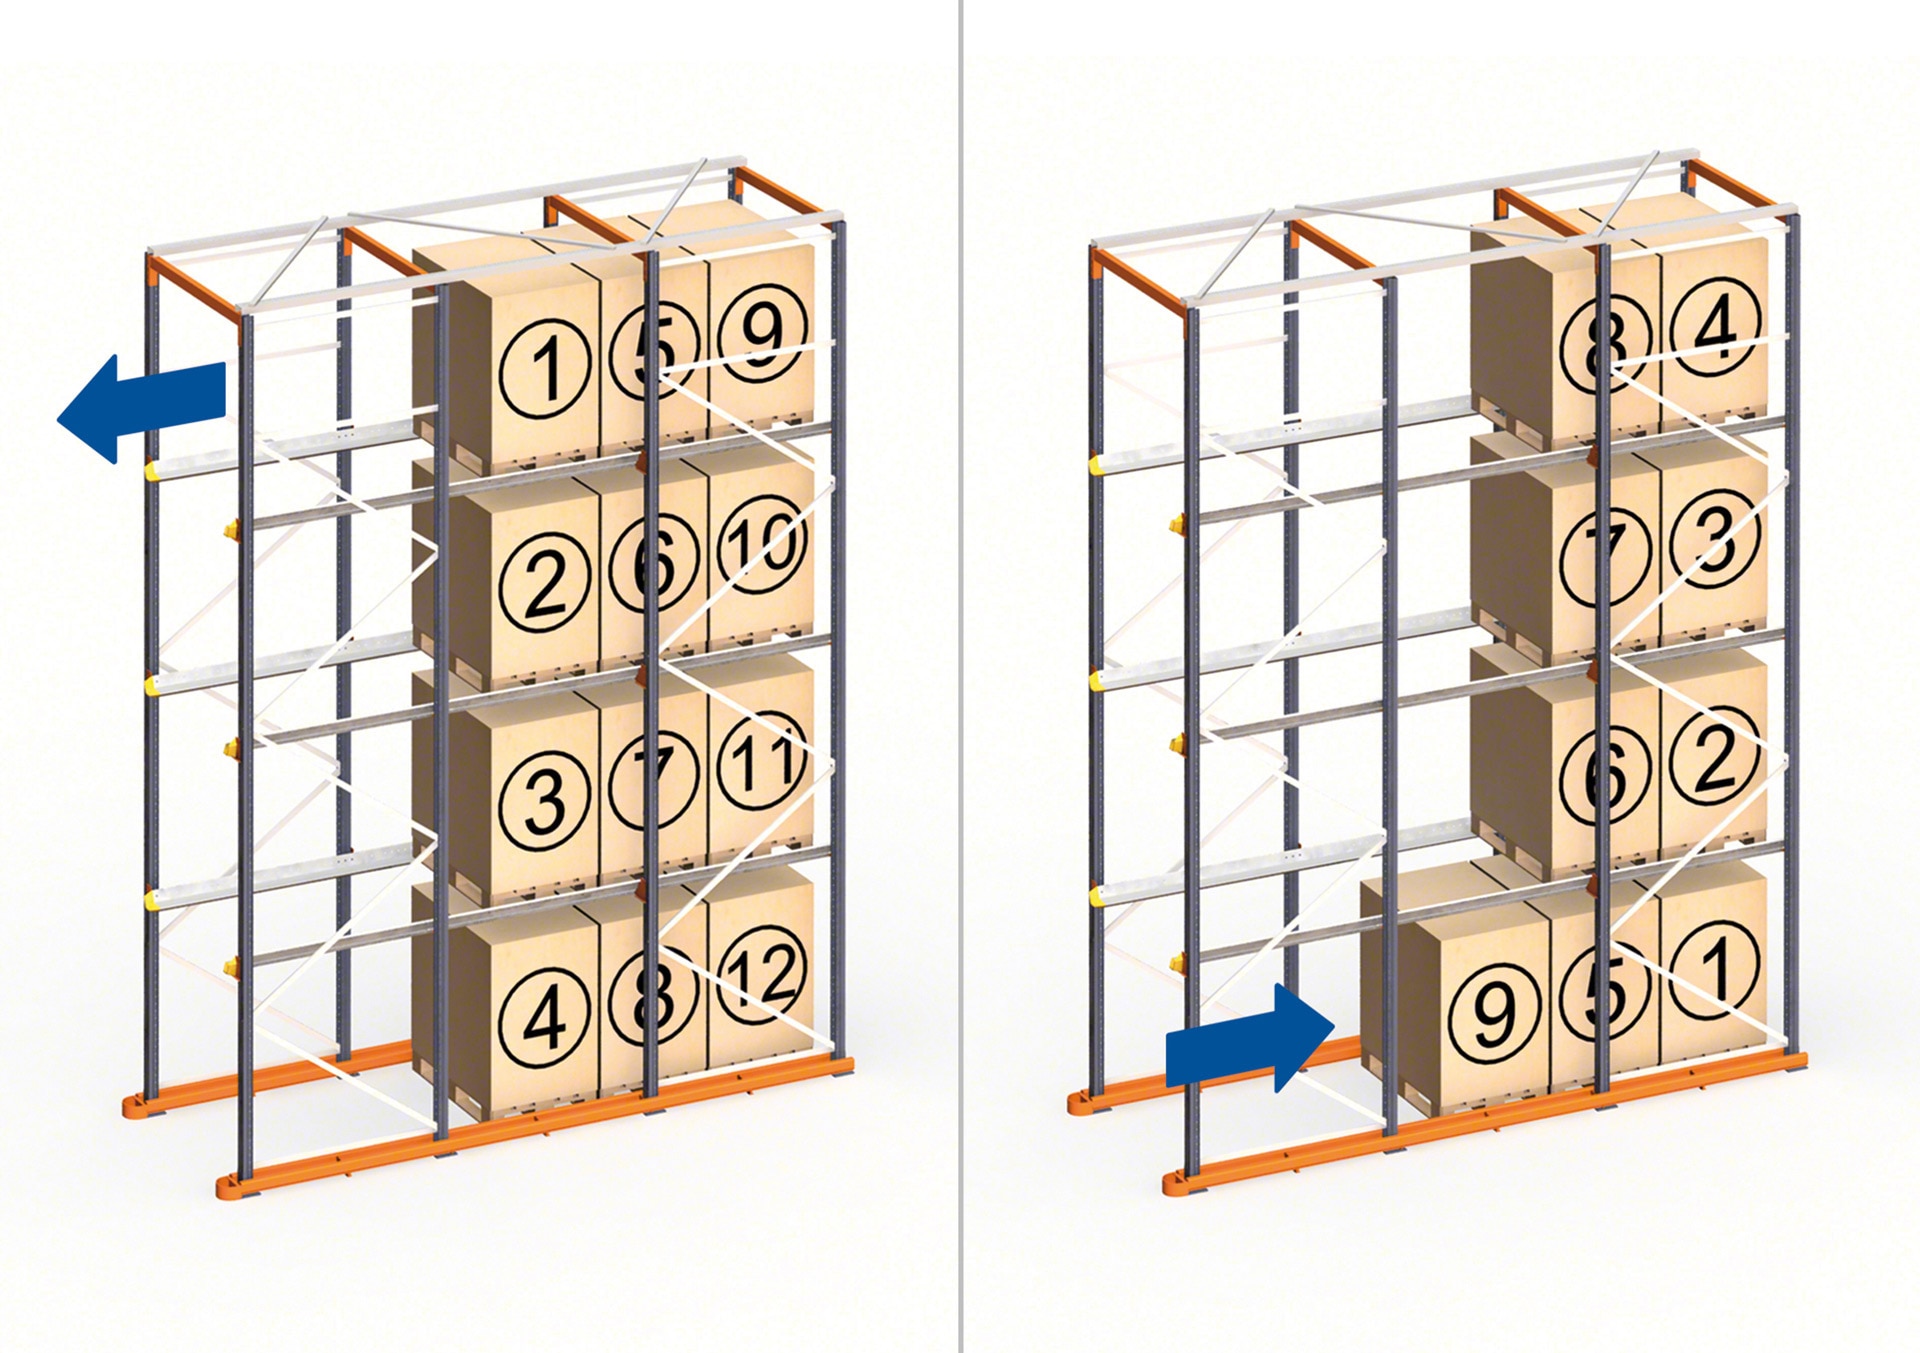 Los racks penetrables drive-in funcionan en bodegas que emplean el método de orden de carga LIFO